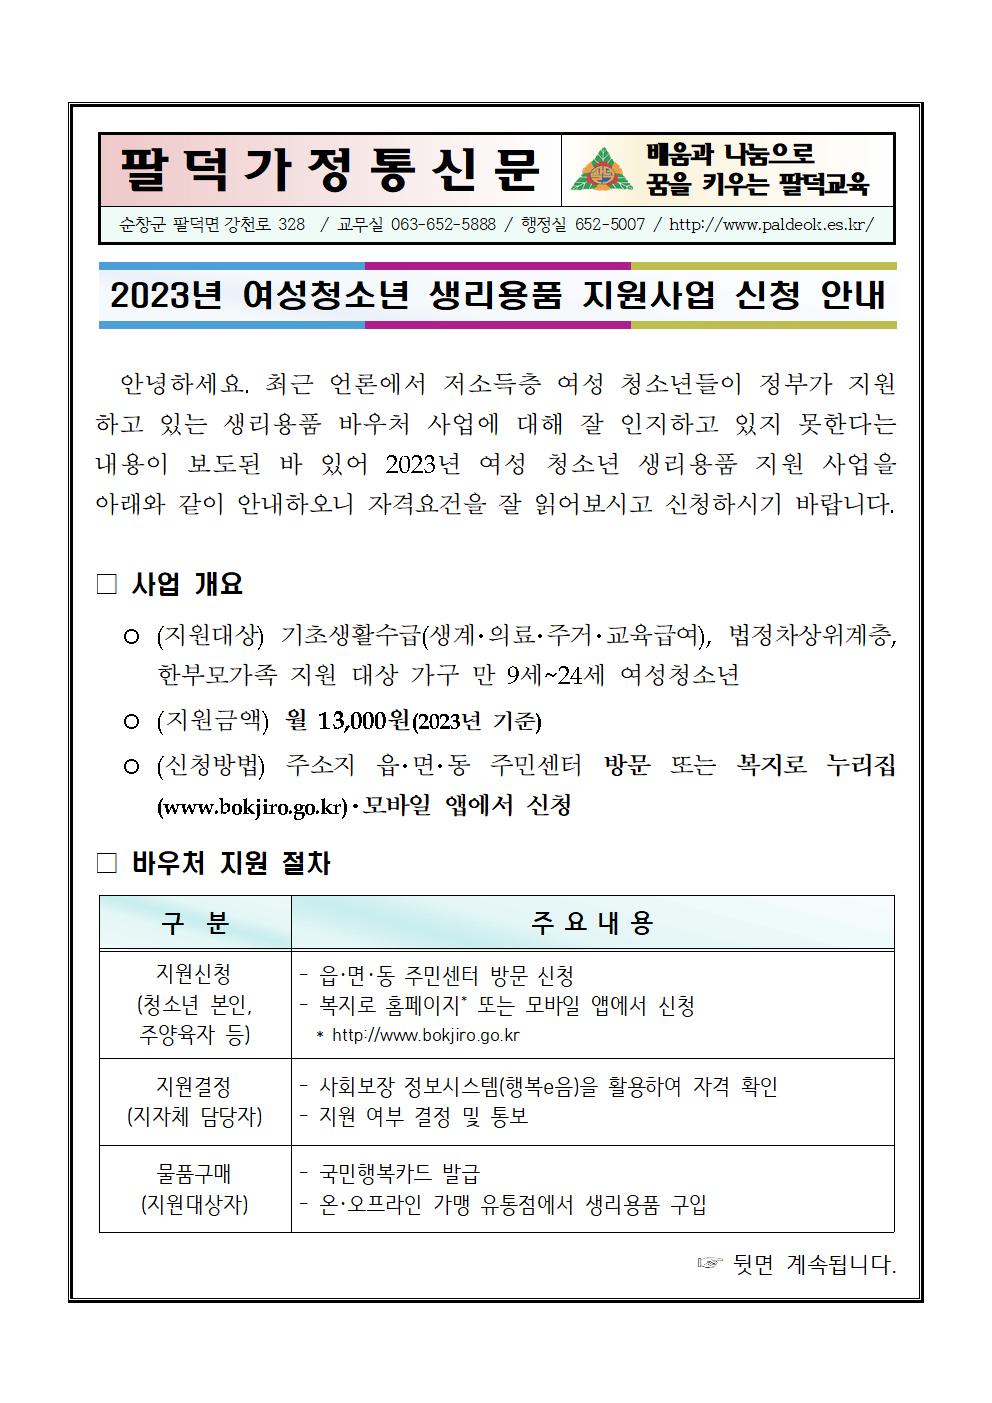 2023년 여성청소년 생리용품 지원사업 신청 안내문001